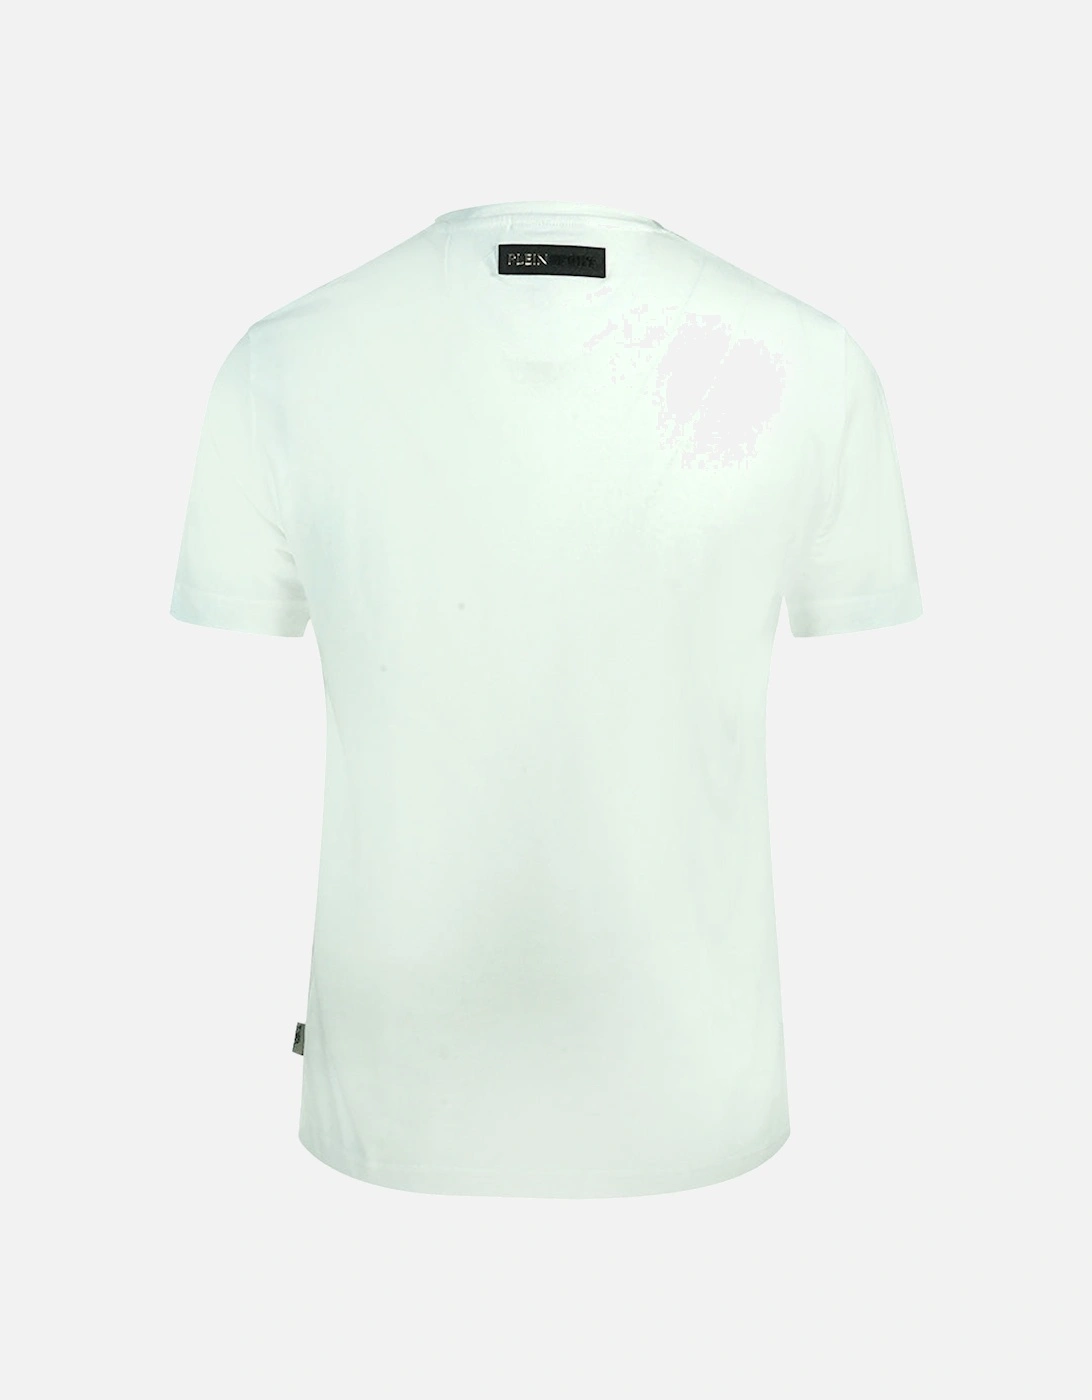 Plein Sport Bold Branded Logo White T-Shirt, 3 of 2